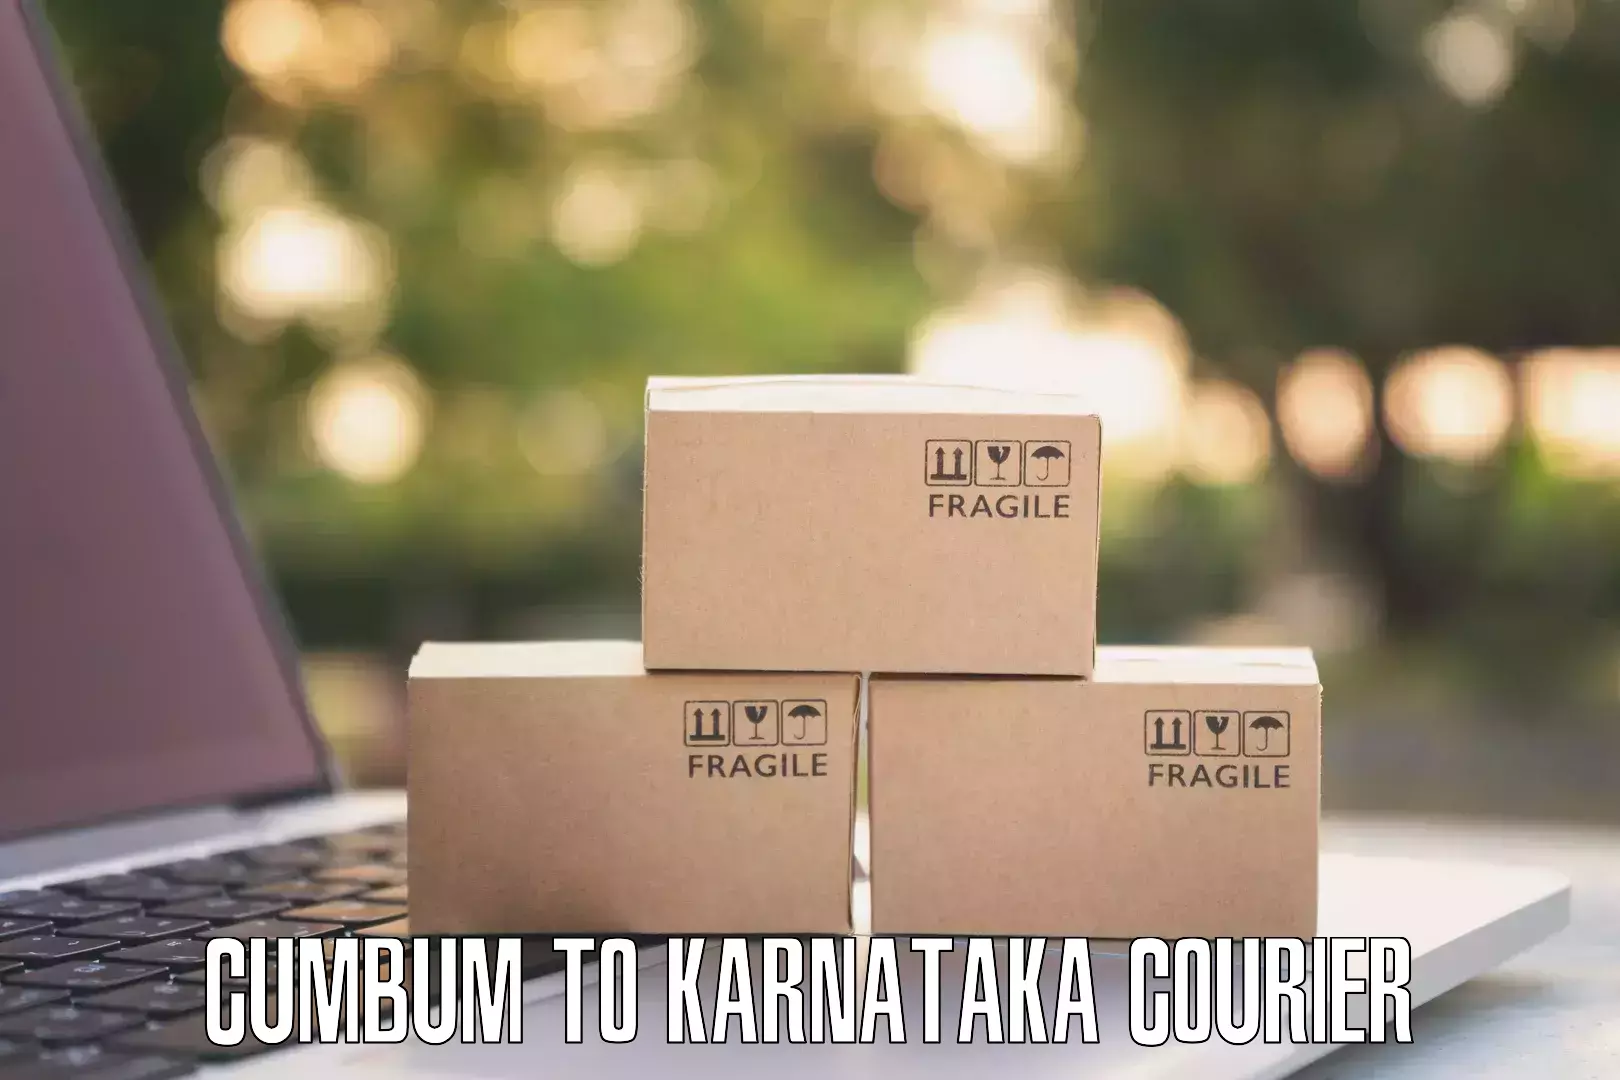 Express package handling Cumbum to Karwar